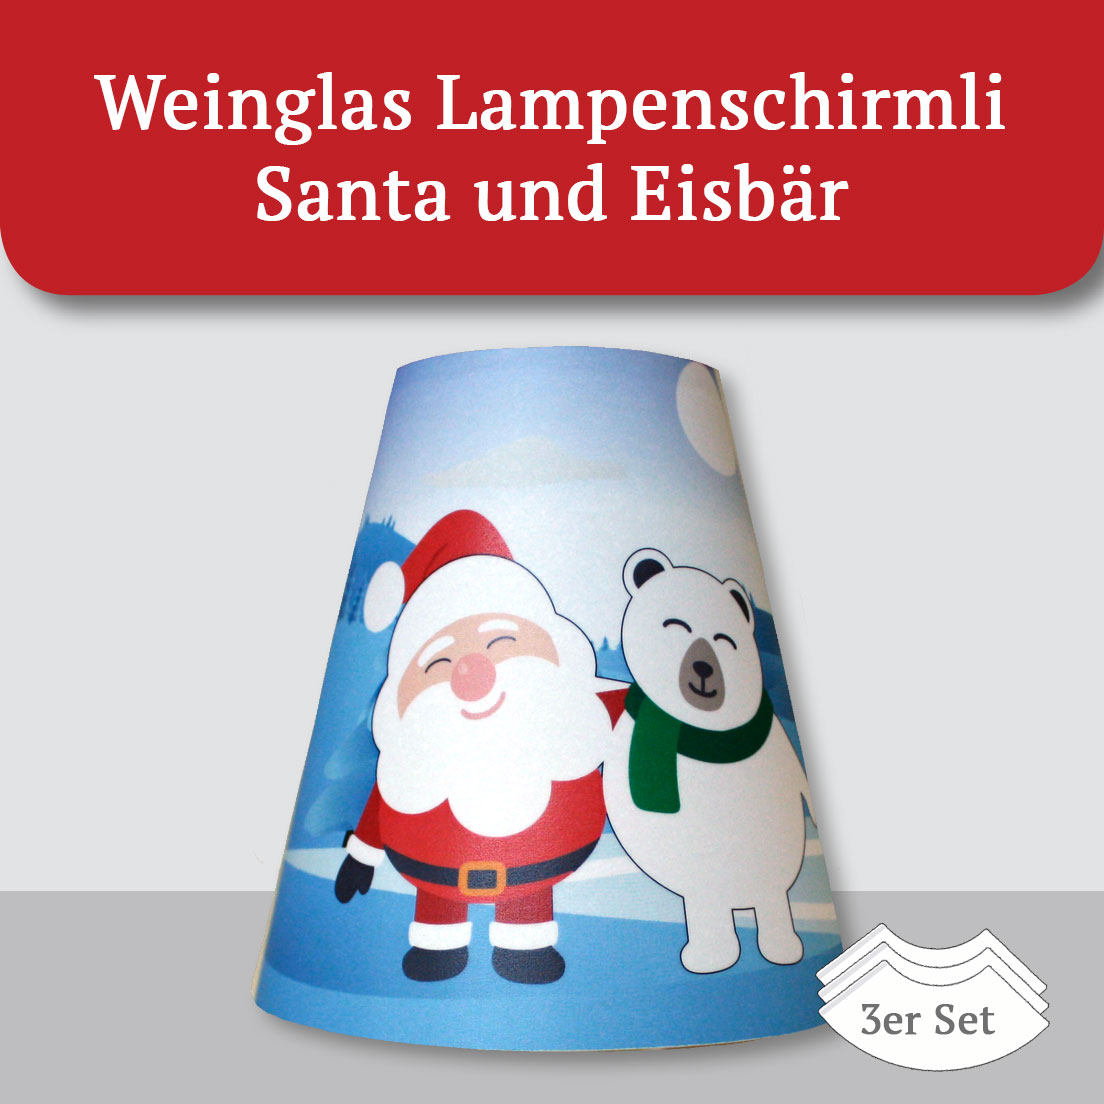 Weinglas Lampenschirmli Santa und Eisbär